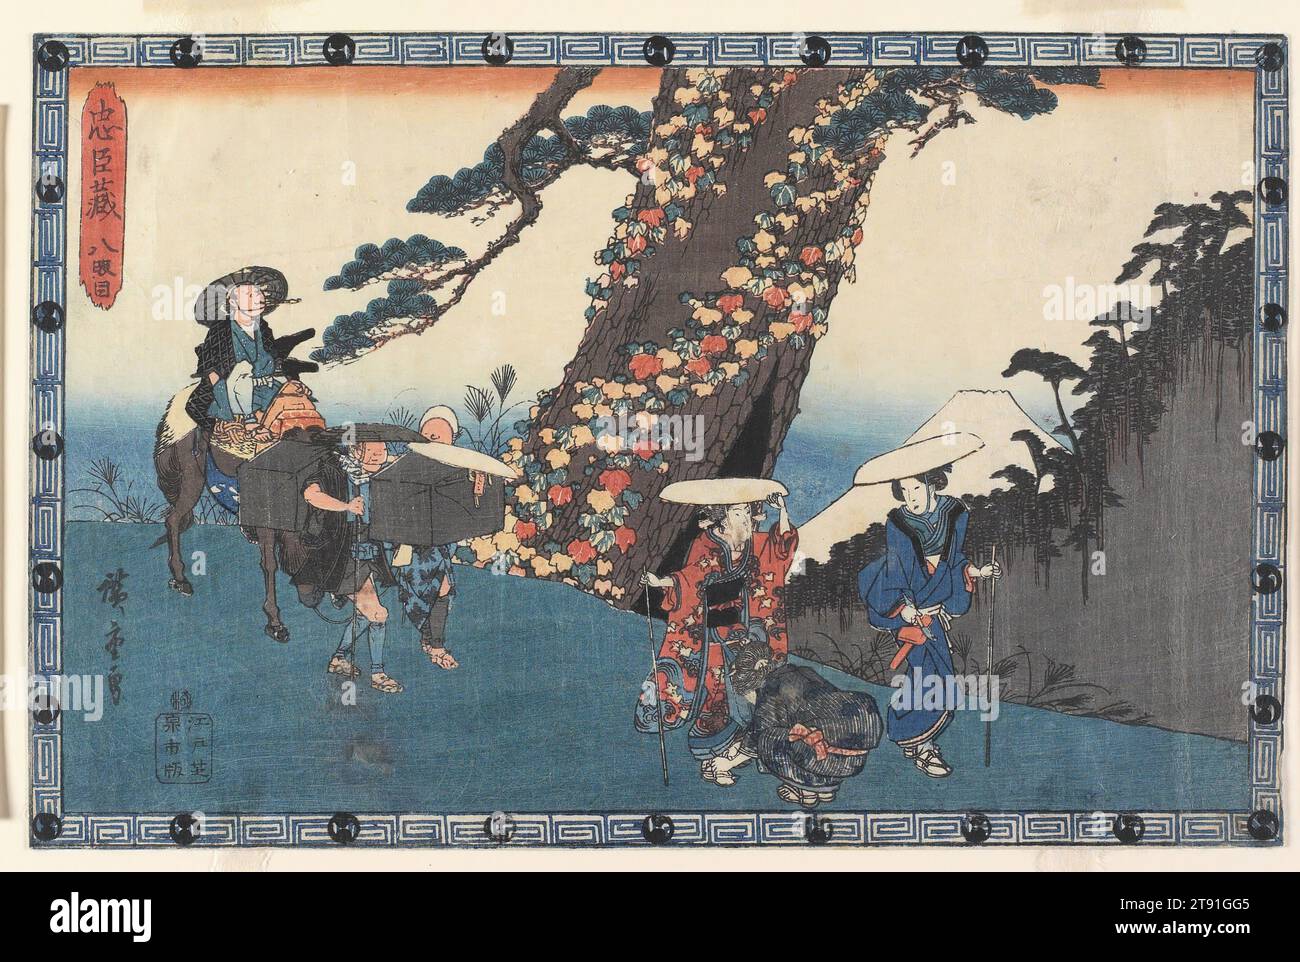 Act VIII, c. 1835-1839, Utagawa Hiroshige; Publisher: Izumiya Ichibei, Japanese, 1797 - 1858, 9 × 14 in. (22.9 × 35.6 cm) (image, sheet, horizontal ōban), Woodblock print (nishiki-e); ink and color on paper, Japan, 19th century Stock Photo